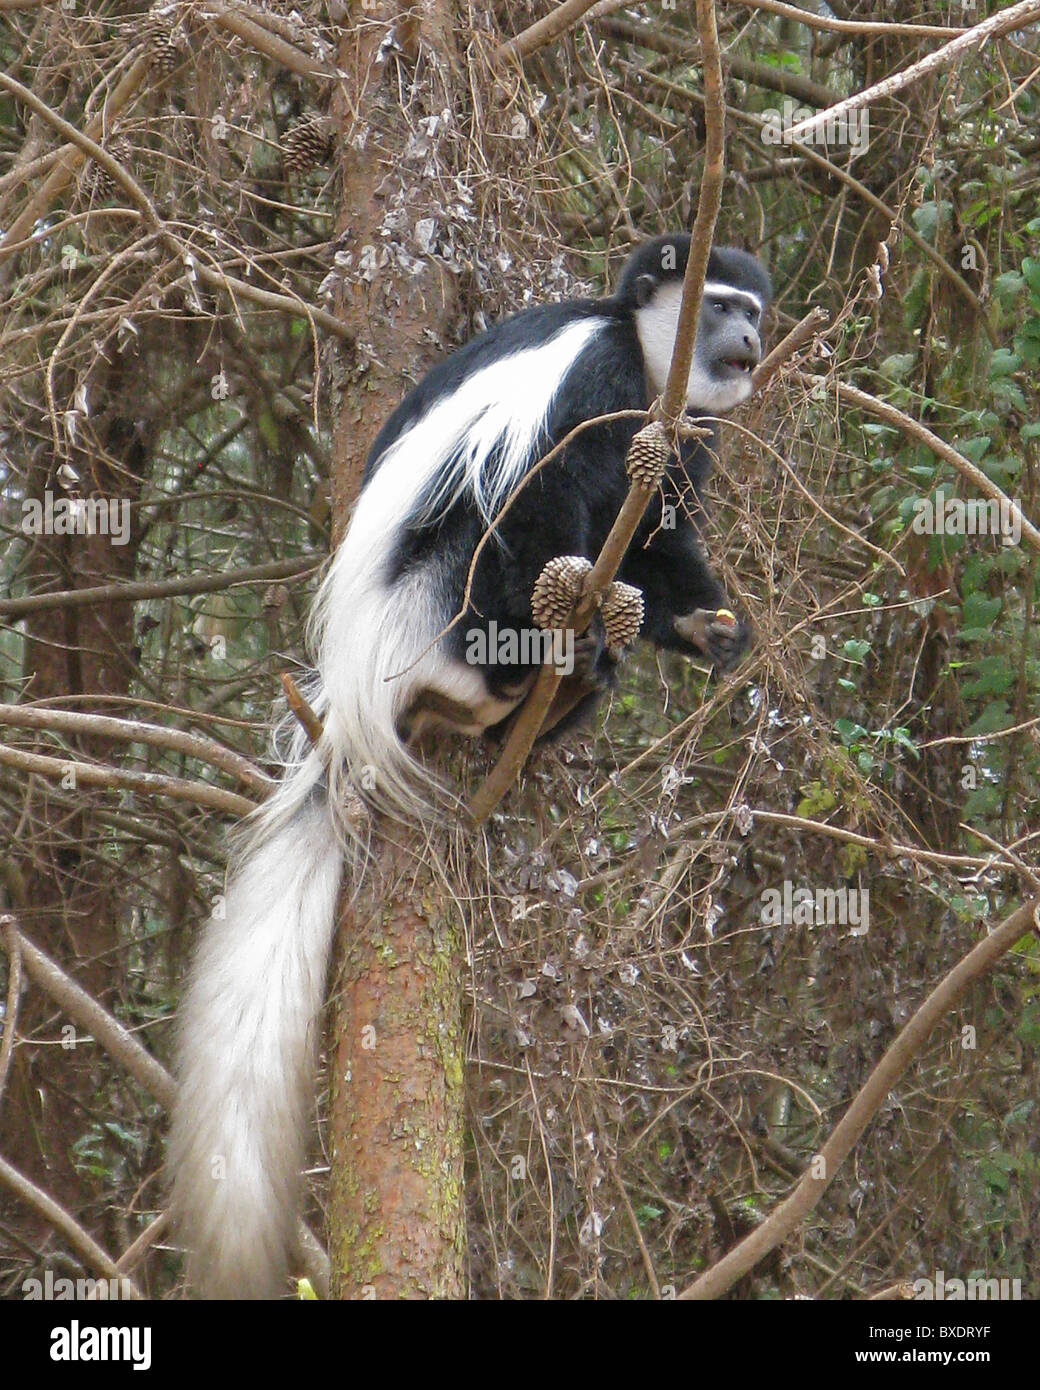 Un singe Colobus noir et blanc repose dans une branche d'arbre à feuilles persistantes, peur de voler les pommes de terre dans un champ près de Kilimanjaro. Banque D'Images